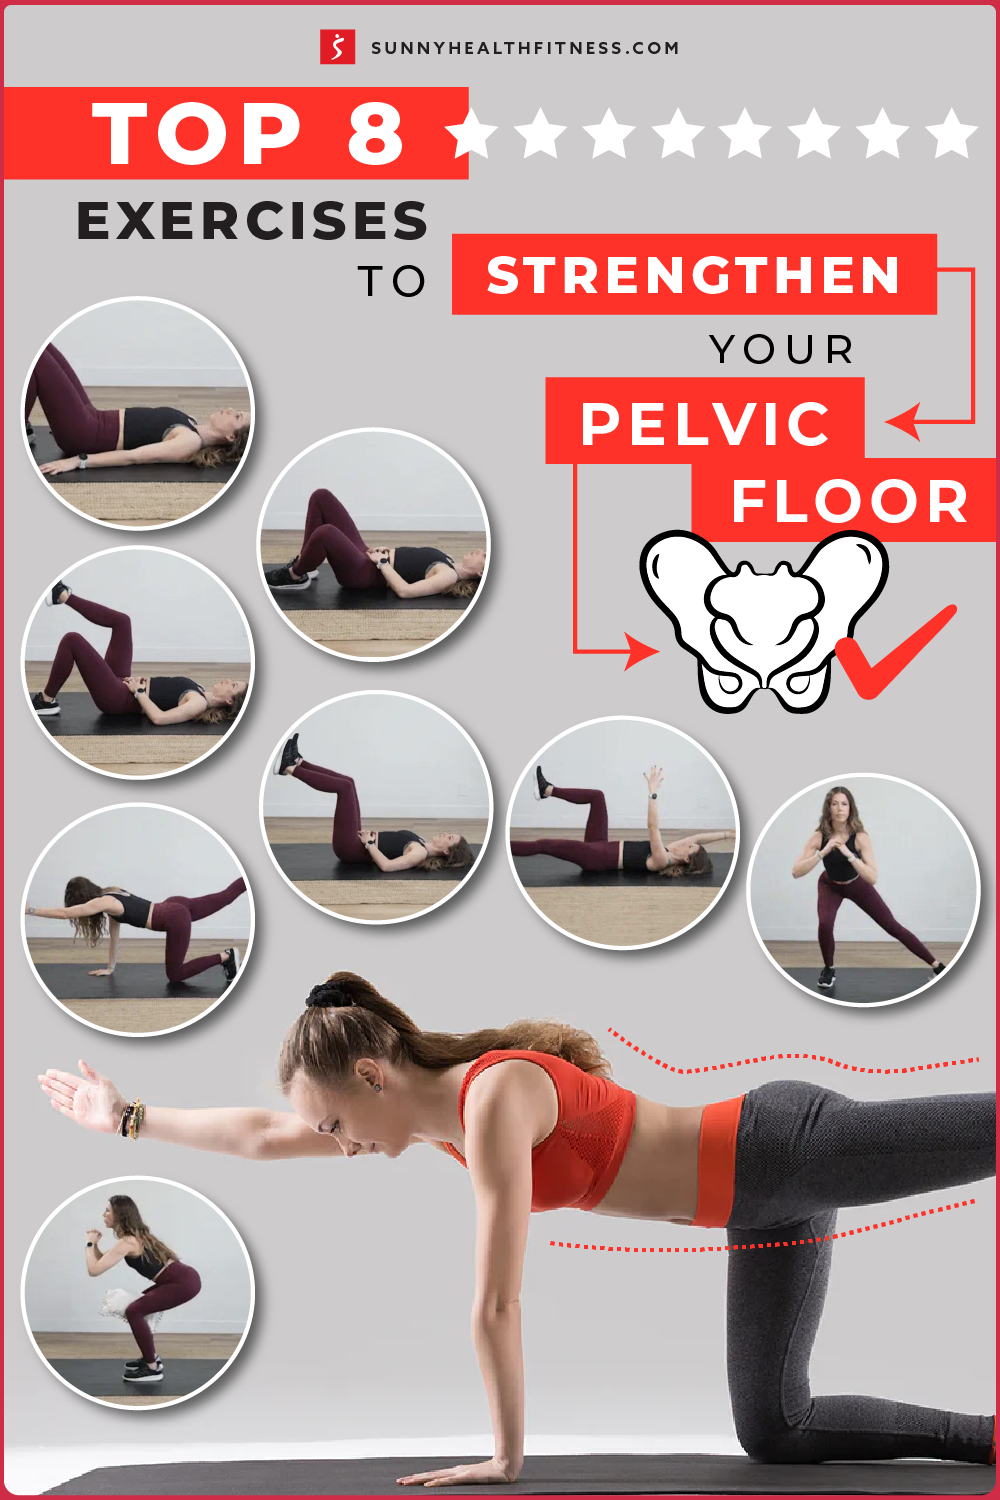 Top 8 Exercises to Strengthen Your Pelvic Floor